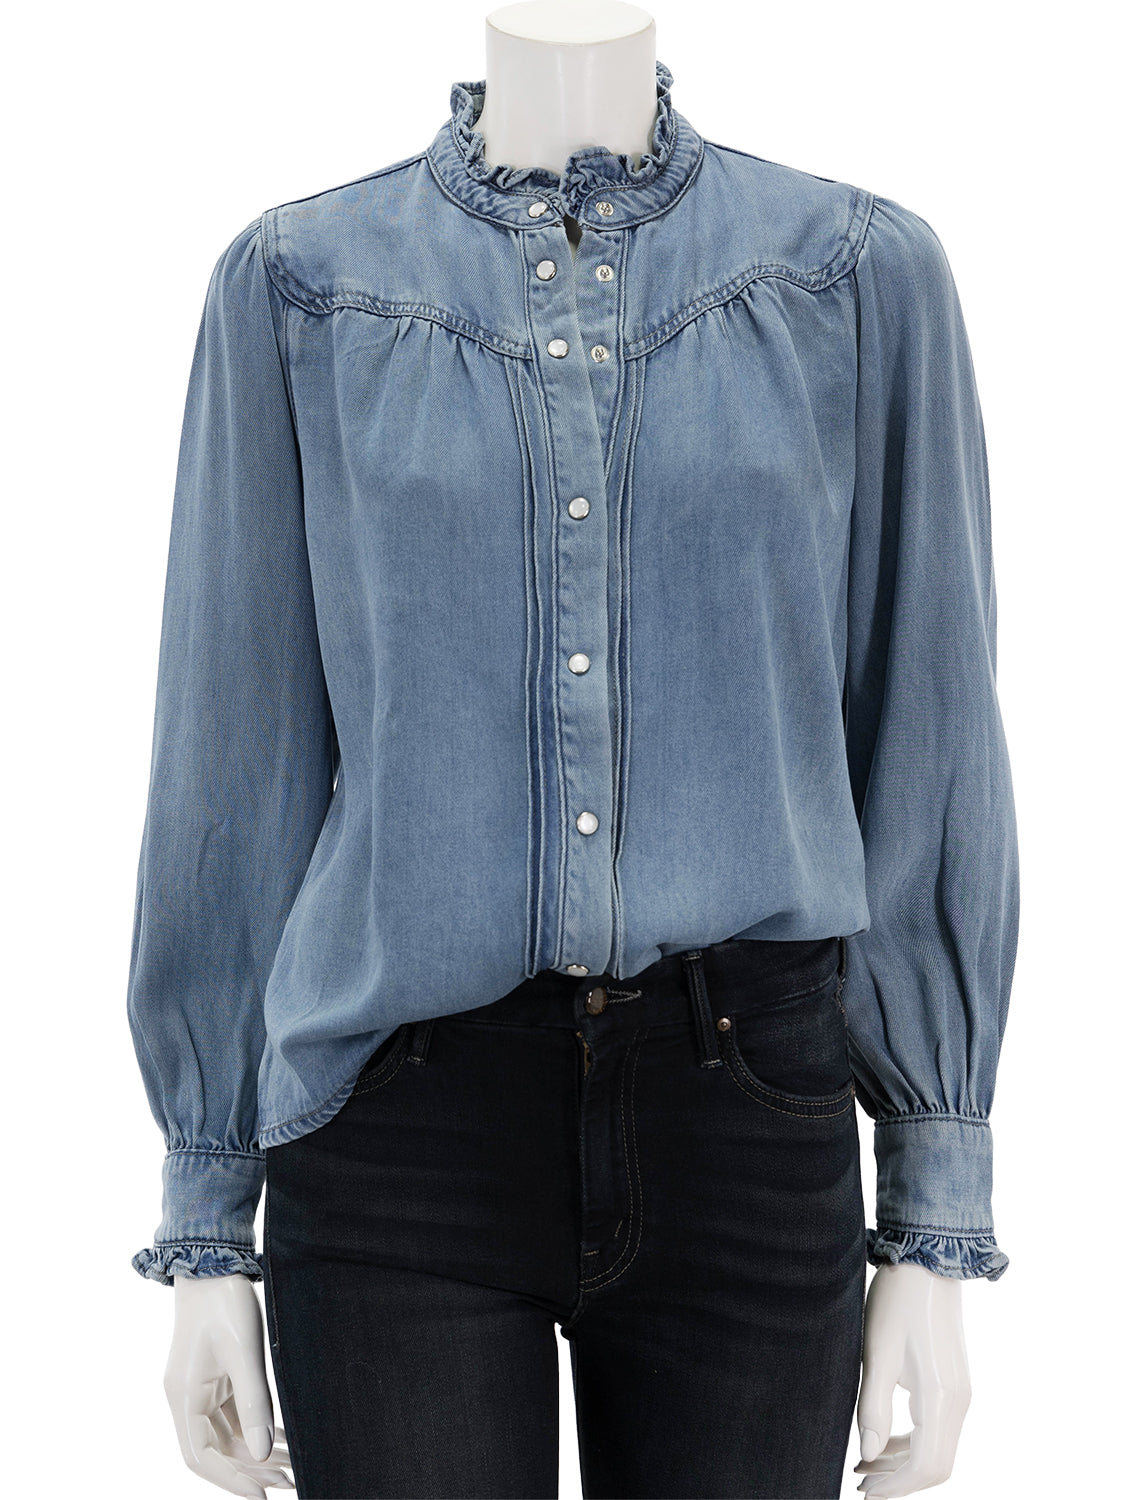 laura blouse in bleu jean – Twigs